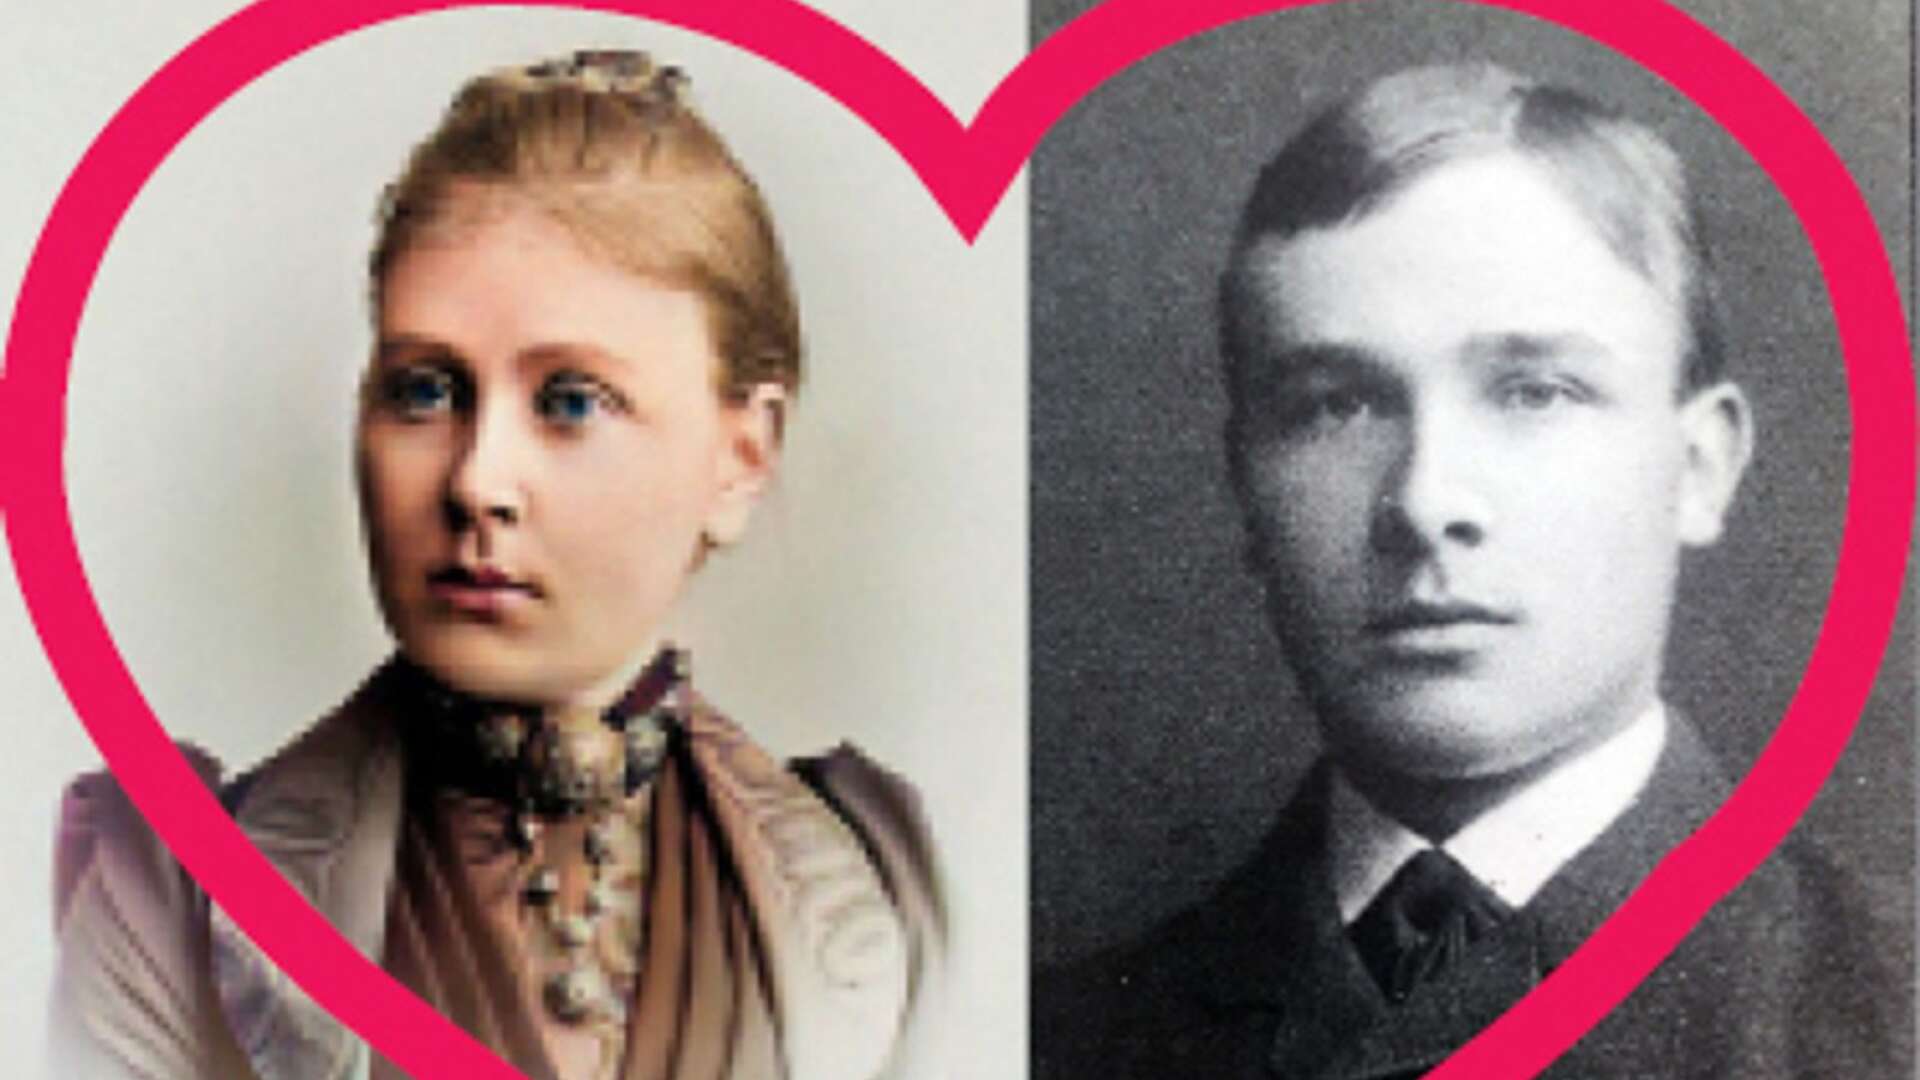 WilhelminaTisell var fru till rektorn på skolan där poeten Erik Axel Karlfeldt vikarierade. En förbjuden romans ledde till en praktskandal. Nu får historien liv.